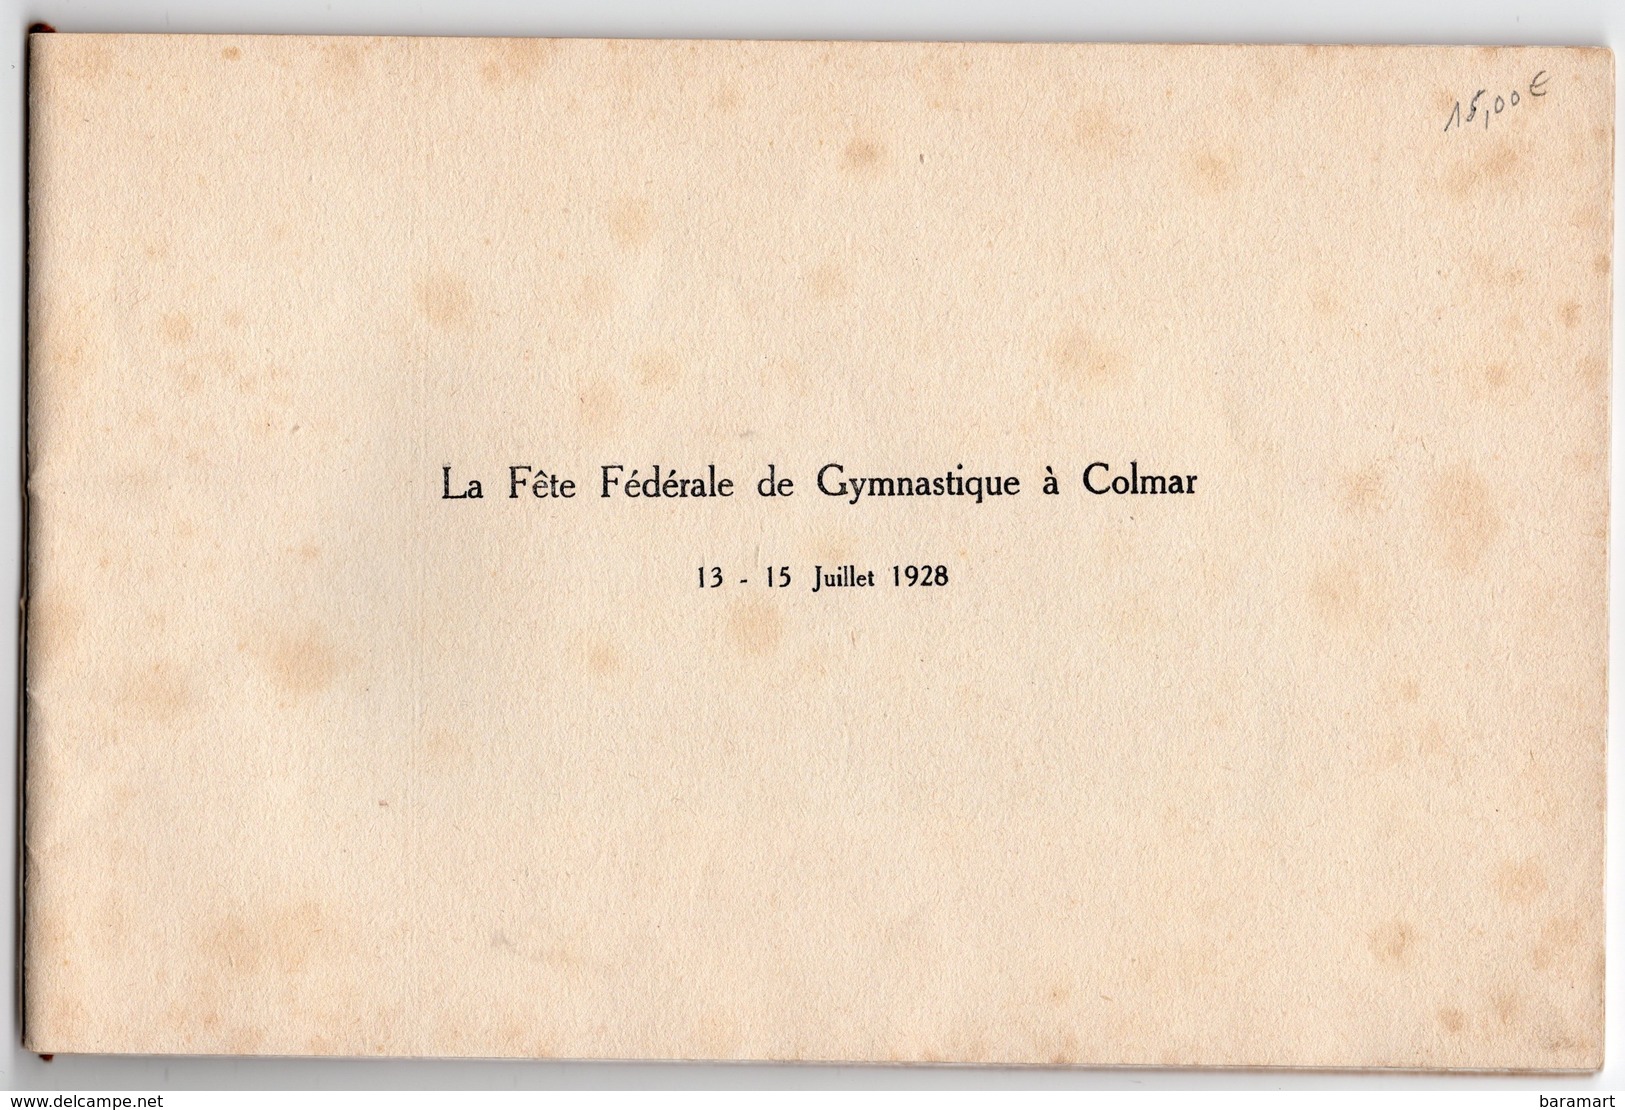 68 Grand Concours International De Gymnastique D'Alsace COLMAR 13 14 15 JUILLET 1928 Livret 38 PAGES + 1 CARTE POSTALE - Ginnastica